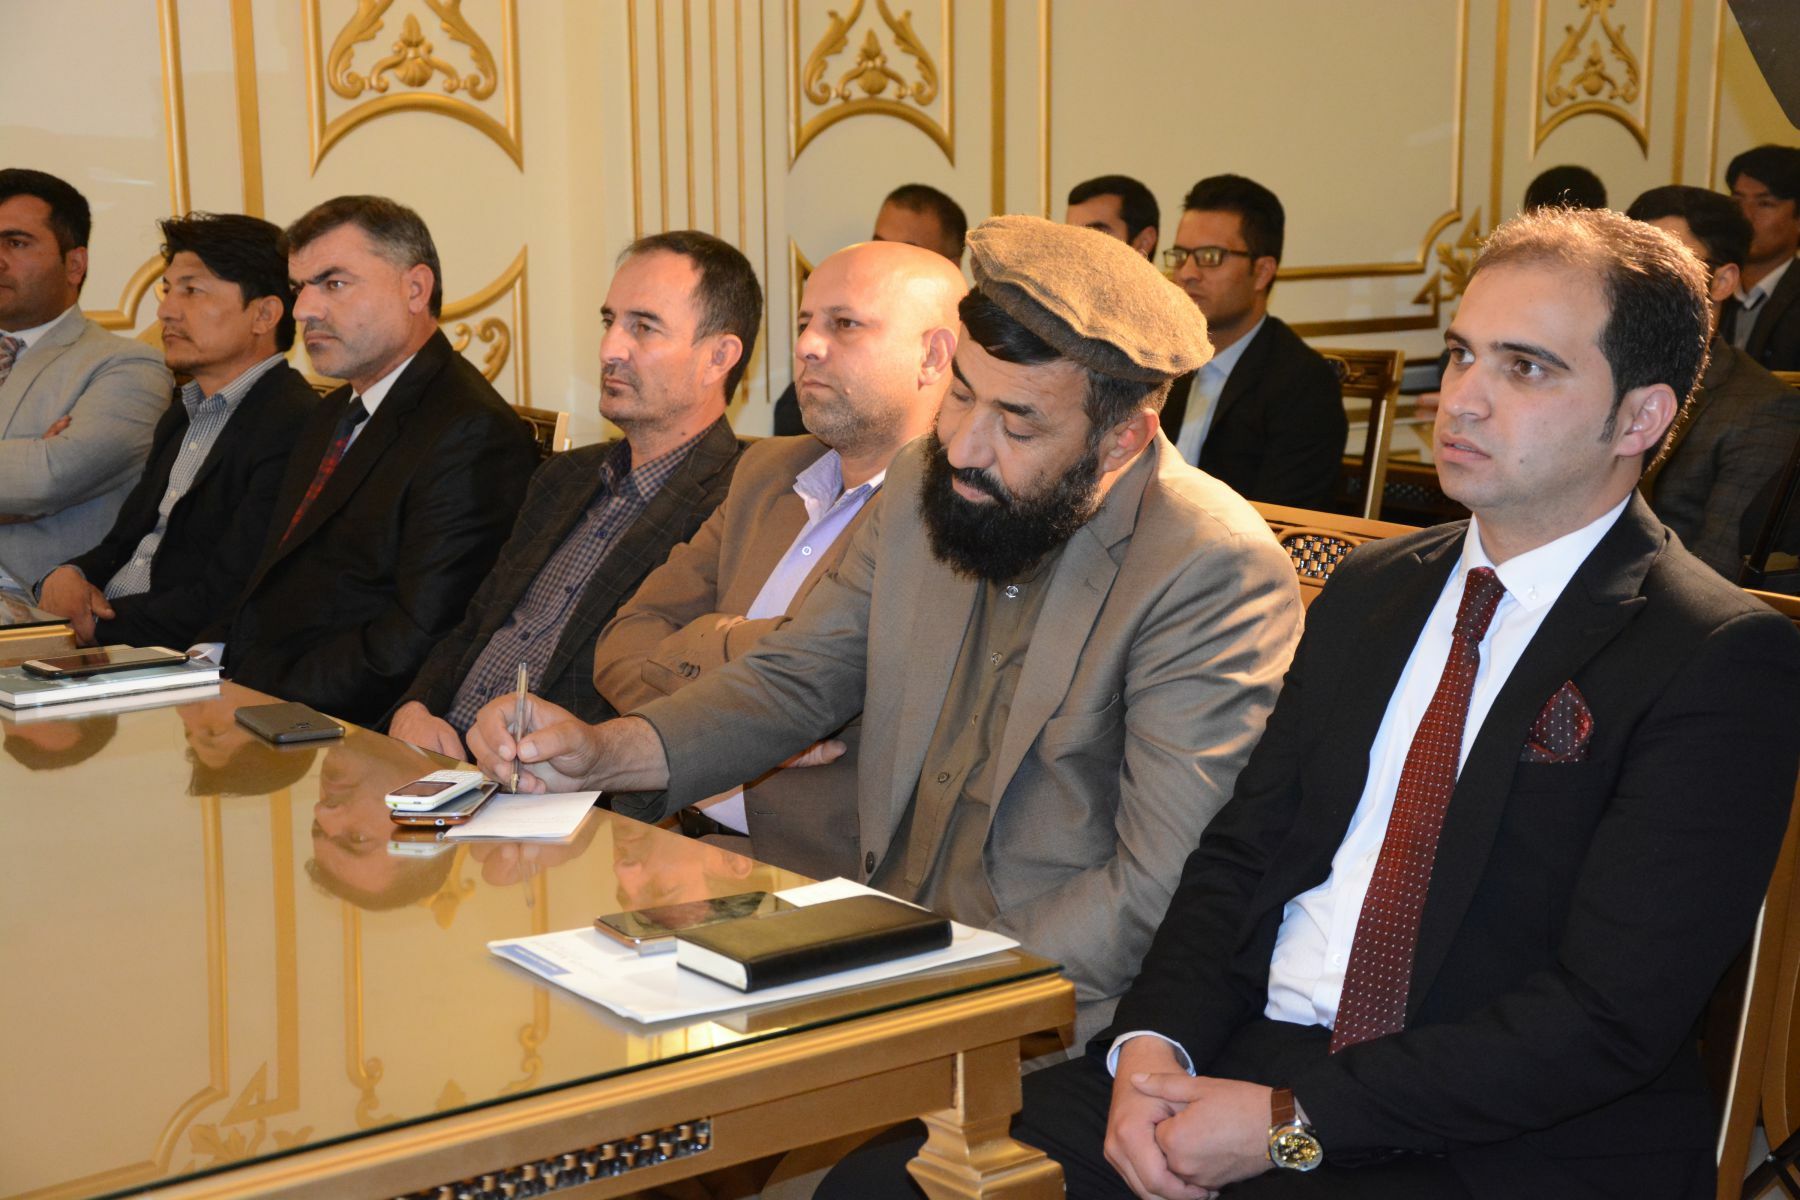 تصویری از محترم محمد خالد “رامزی” همراه با اساتید و سخنرانان در جریان محفل